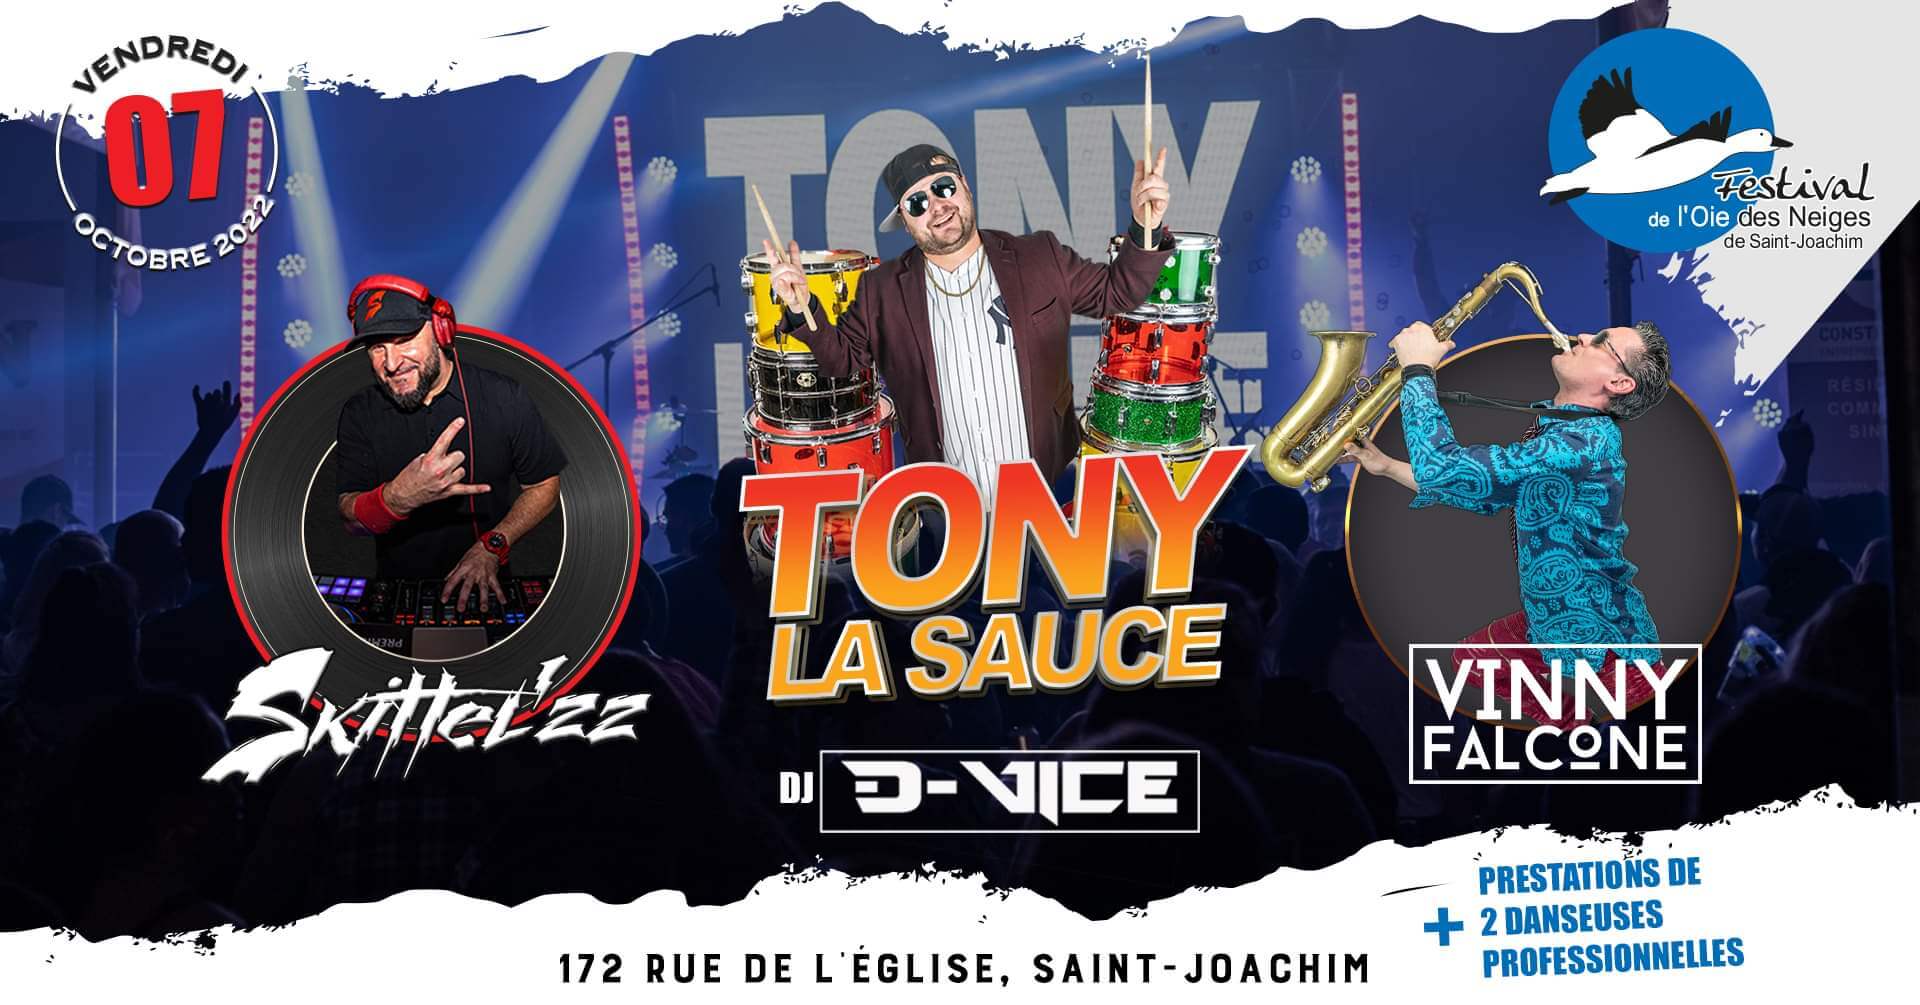 Tony La Sauce avec DJ Skittel’ZZ, le saxophoniste Vinny Falcone et DJ Vice